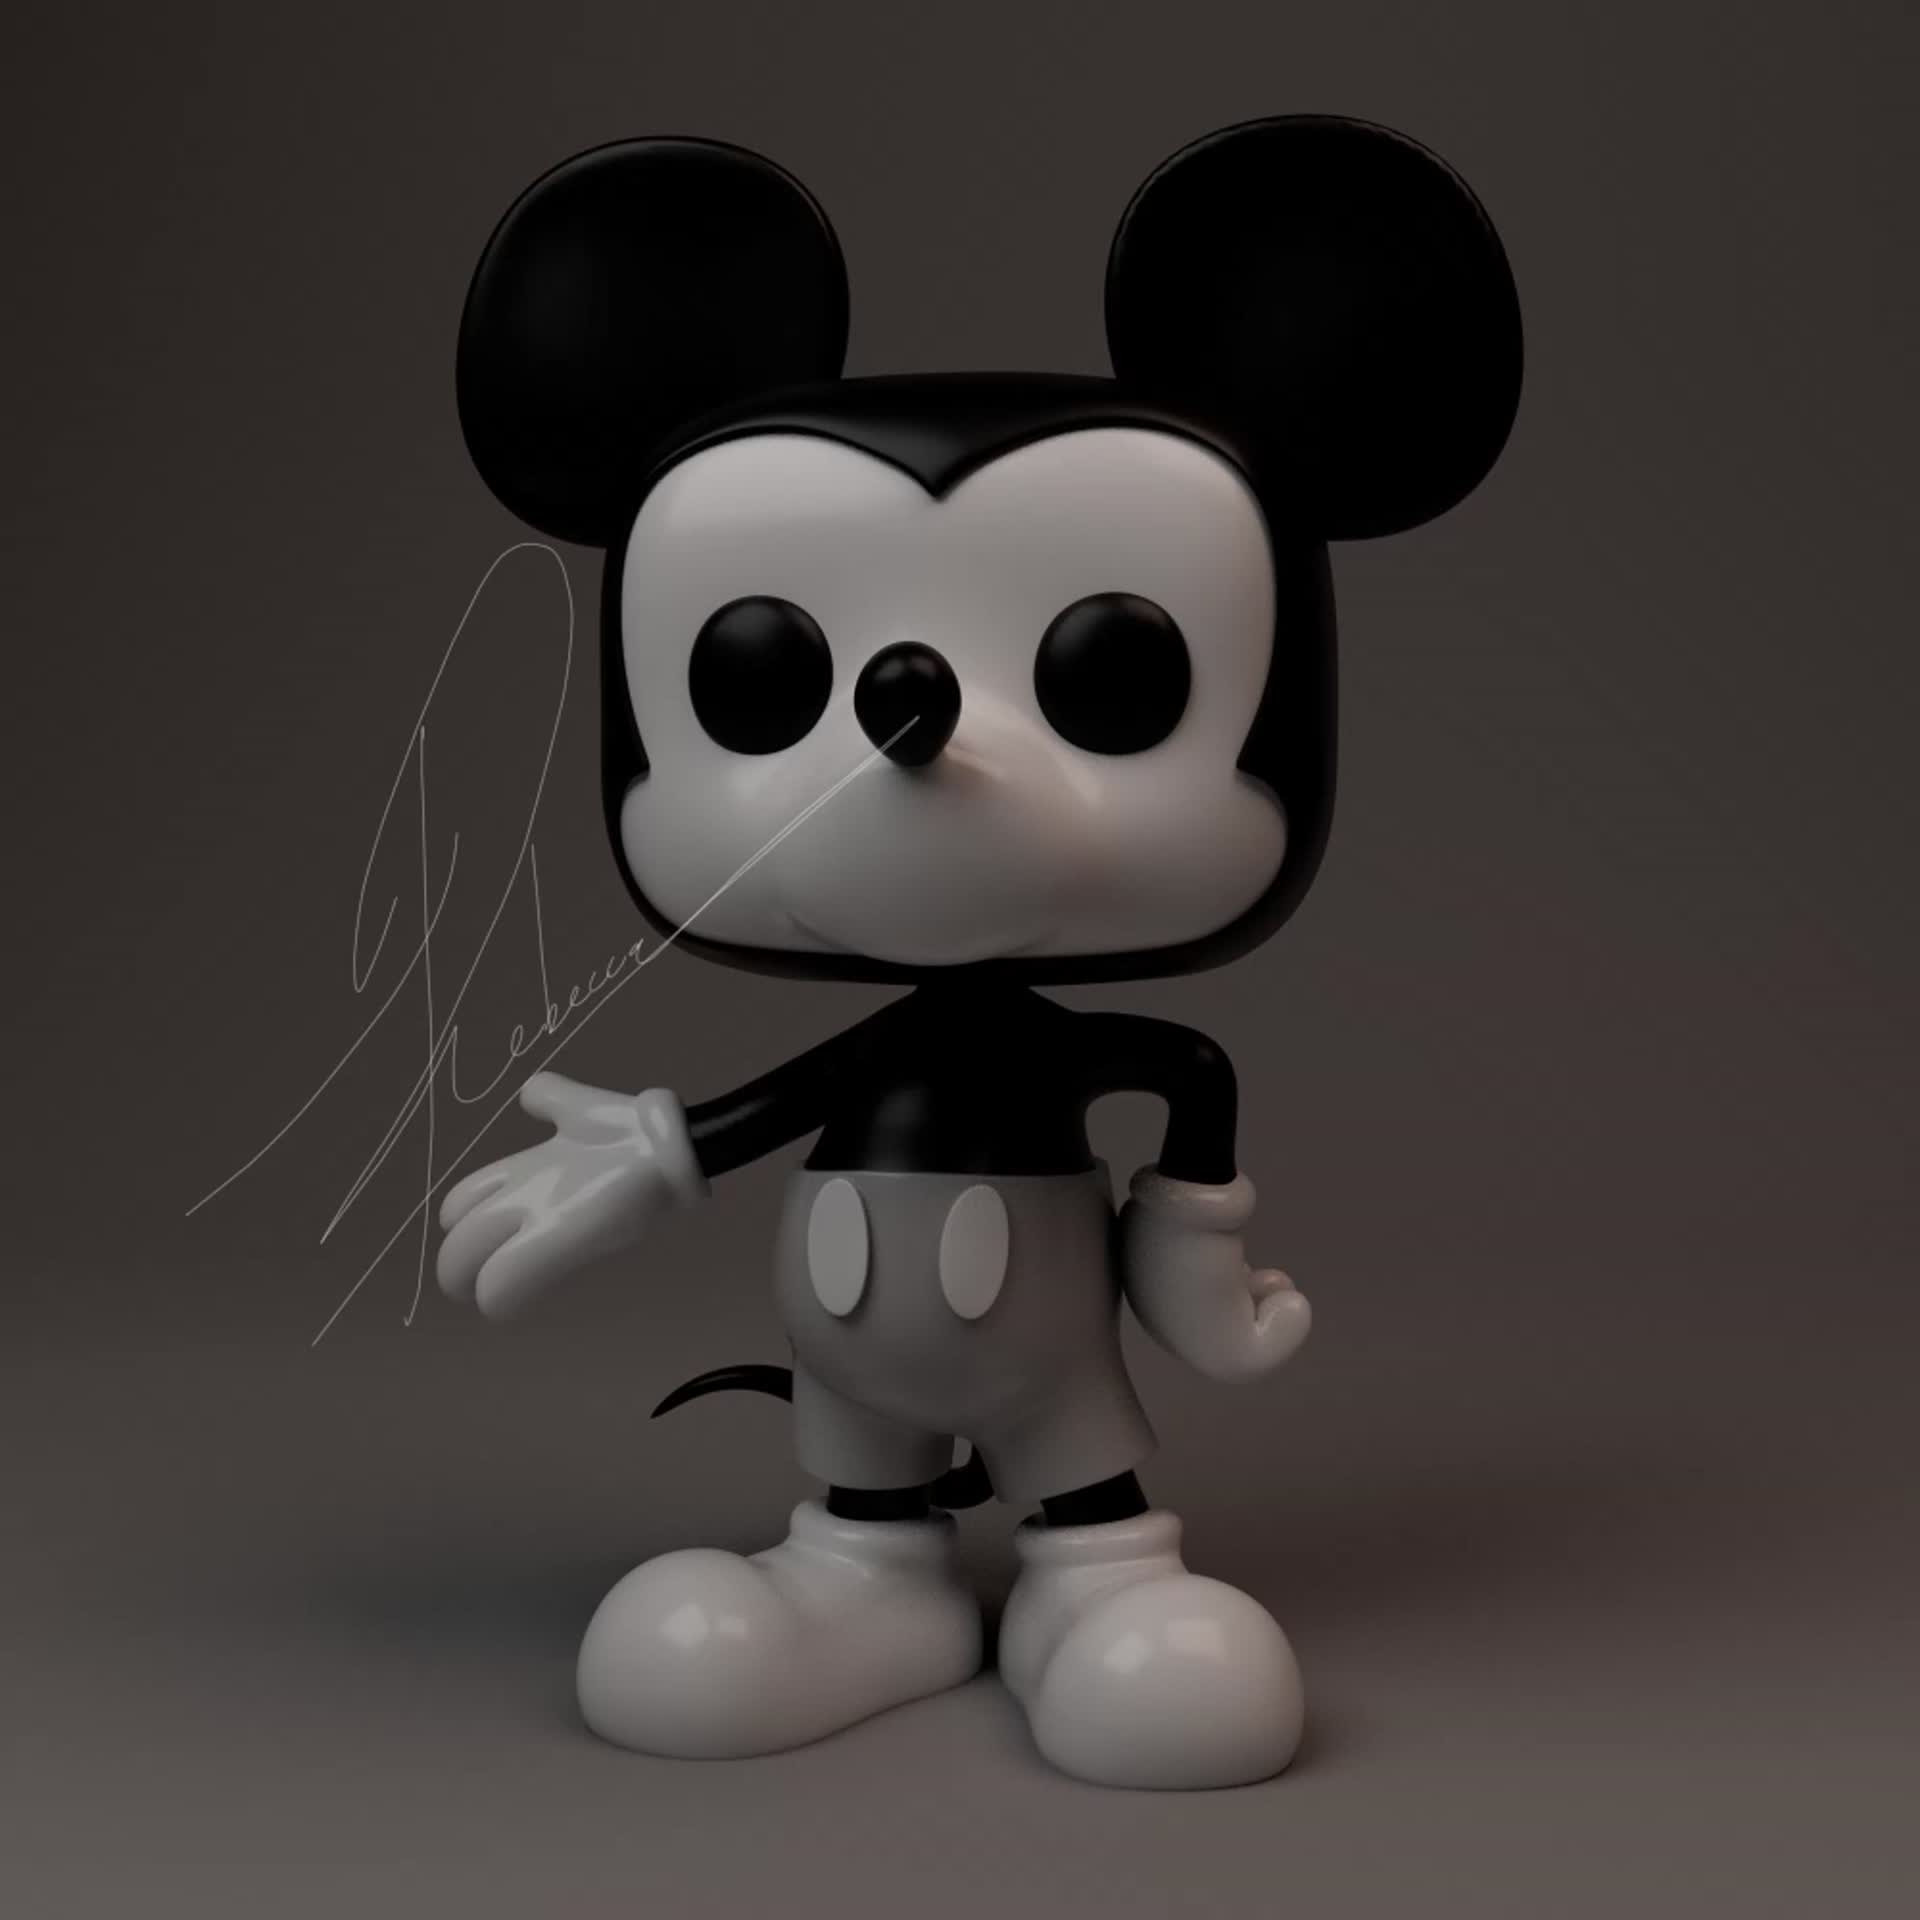 ArtStation - Baseball Mickey